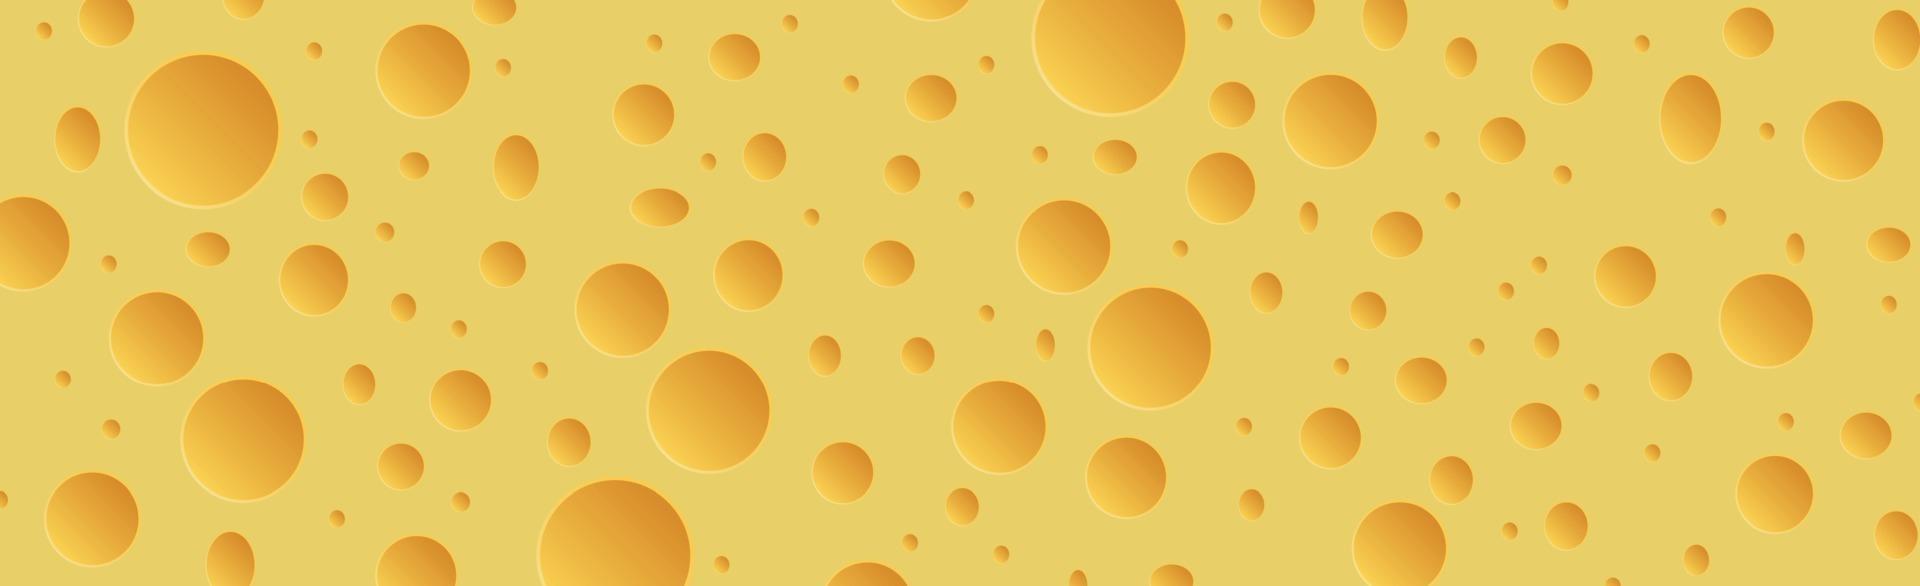 gul ost med panoramabakgrund för hål - vektor